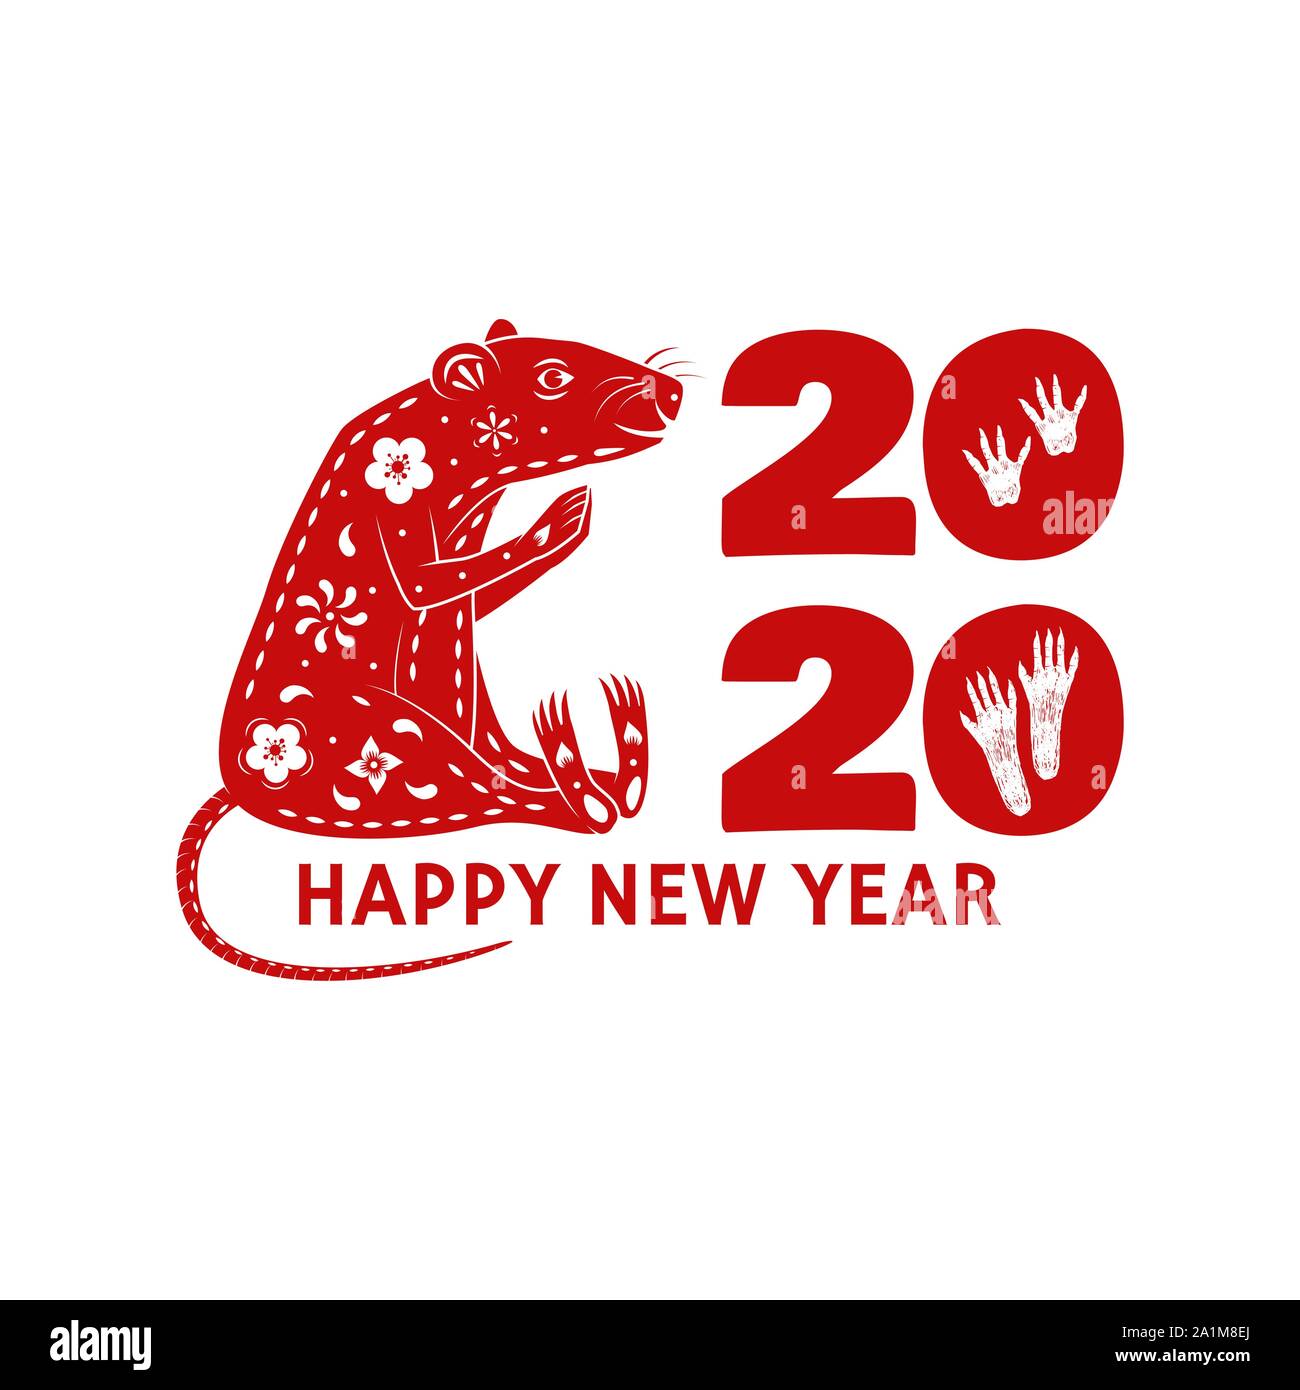 Joyeux Noël et Bonne Année 2020, timbre autocollant avec signe de nouvelle année - rat. Vector illustration. Typographie design pour Noël, nouvel an dans l'emblème de style rétro. Illustration de Vecteur